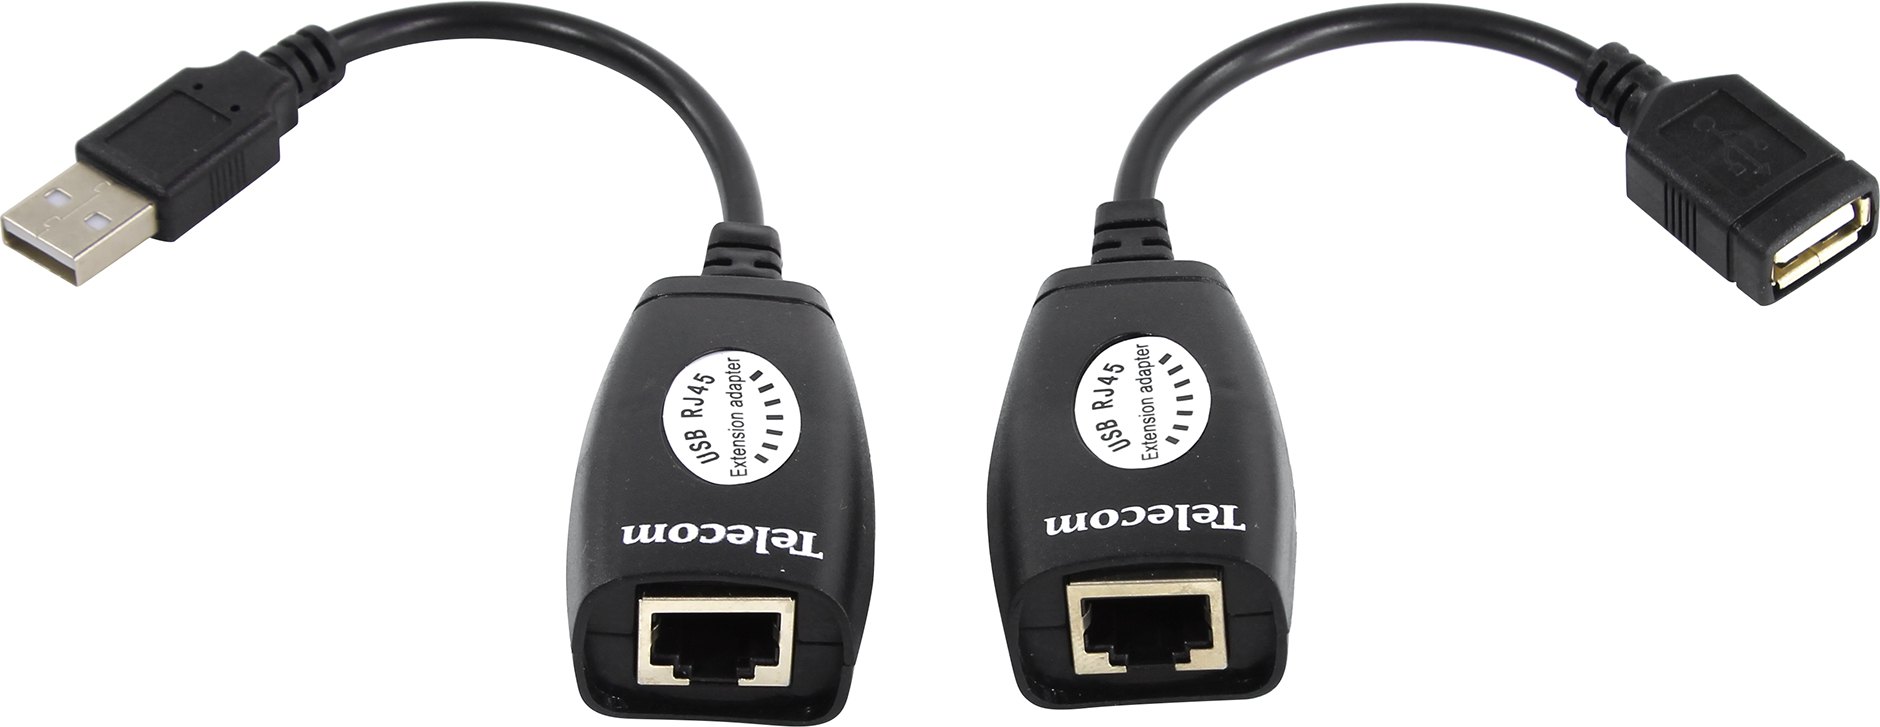 Адаптер-удлинитель USB-AMAF-RJ-45, Telecom, 10см, черный (TU824)